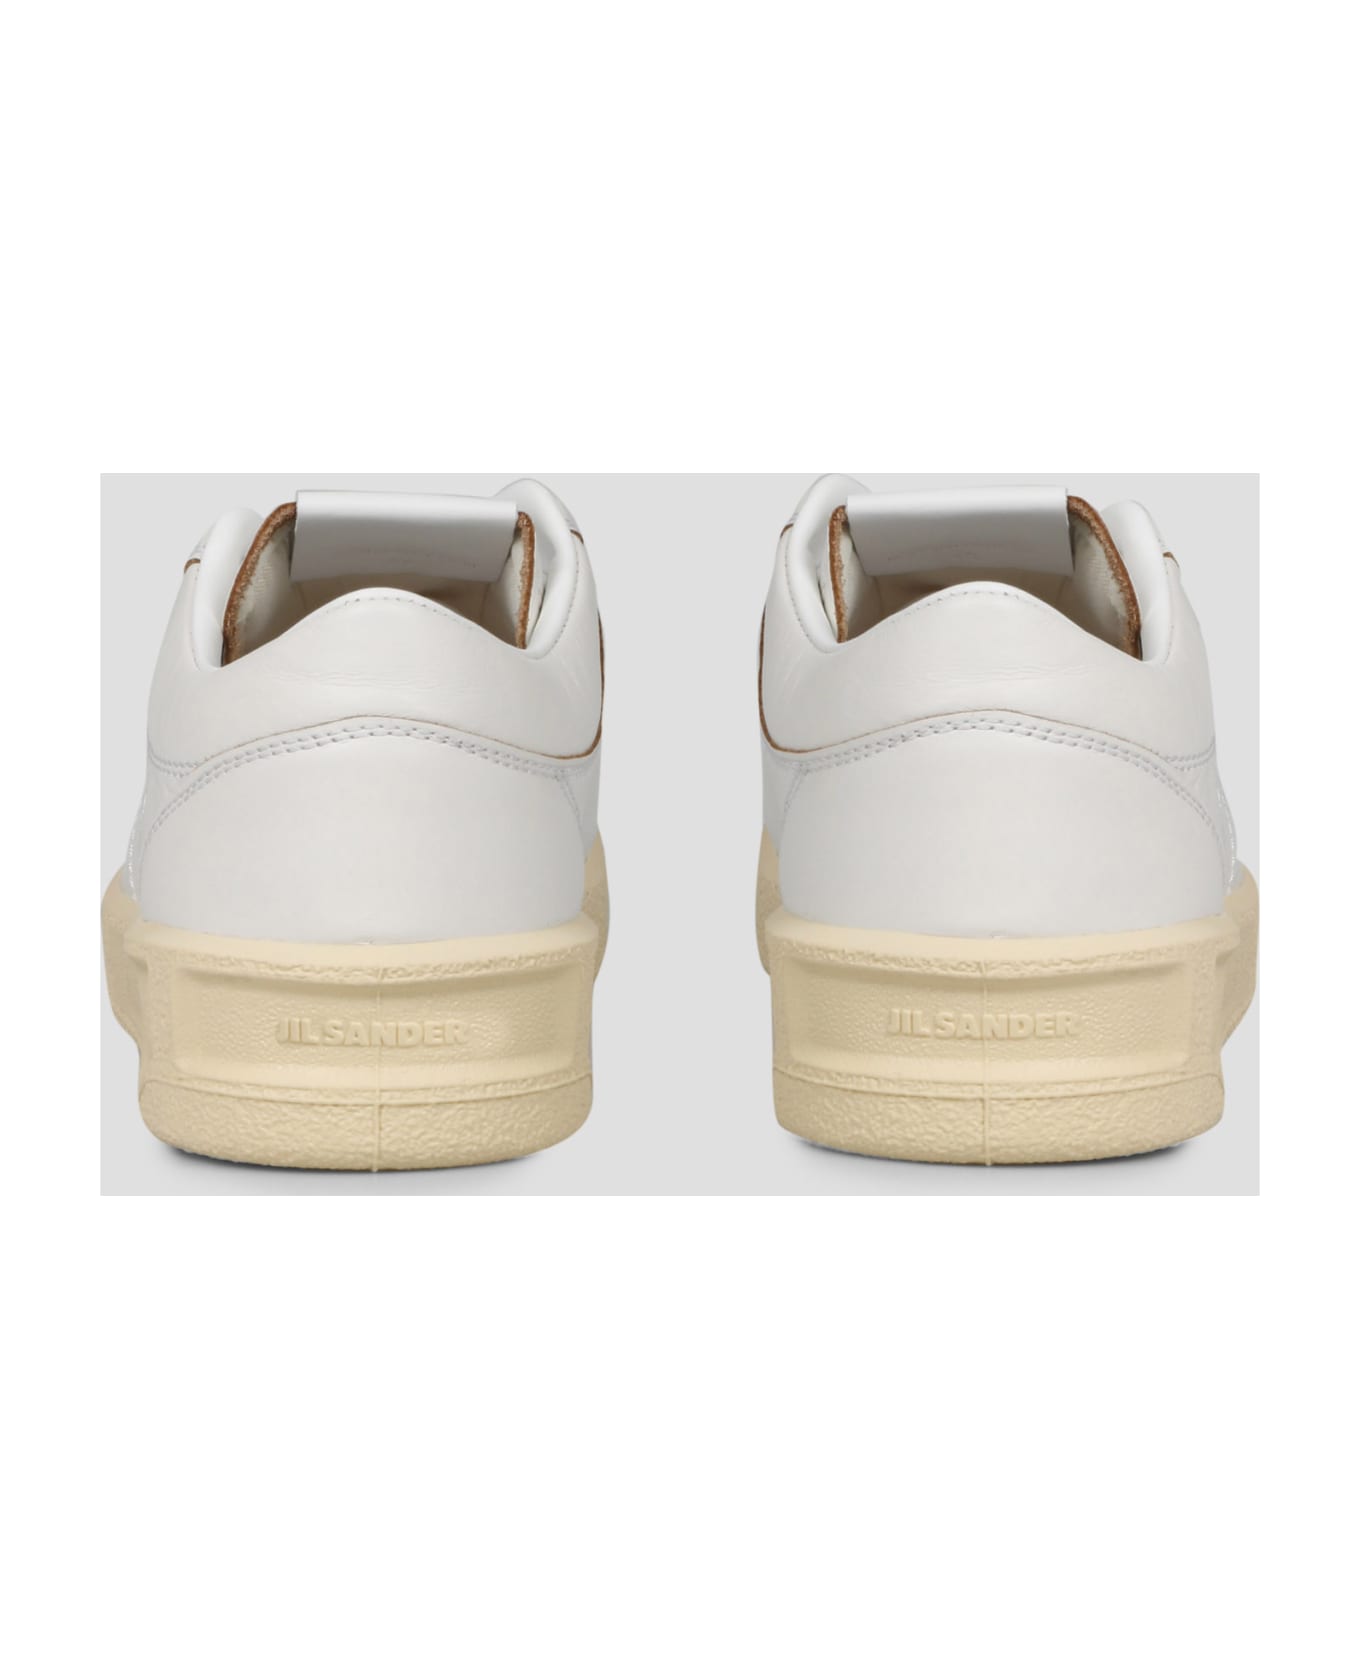 Jil Sander Low Top Sneakers - White